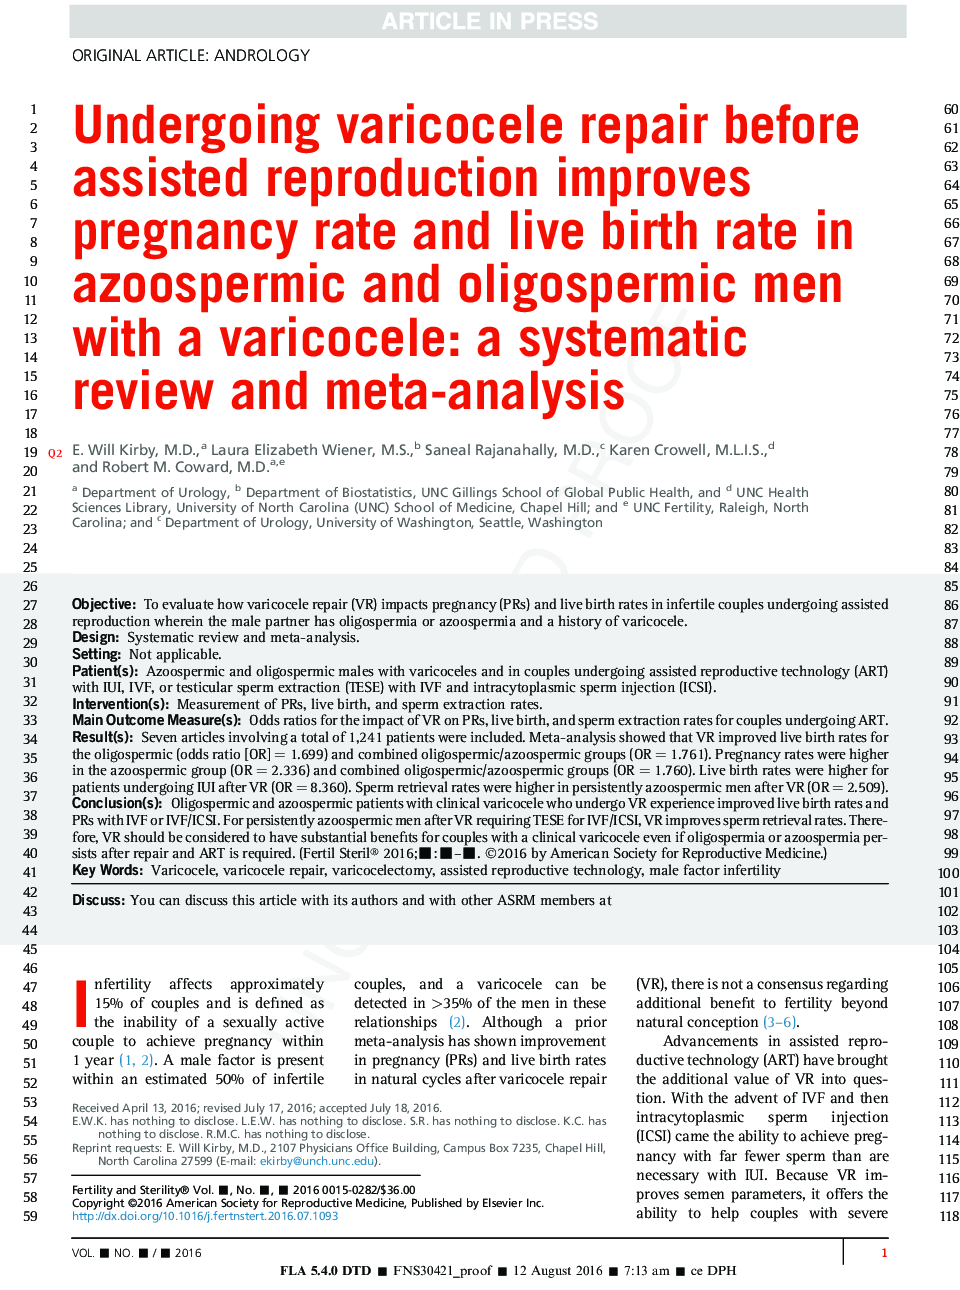 پس از ترمیم واریکوسل قبل از تولید مثل کمک می کند میزان بارداری و تولد زنده را در مردان مبتلا به واریکوسل و زایسپرمیک افزایش دهد: بررسی منظم و متاآنالیز 